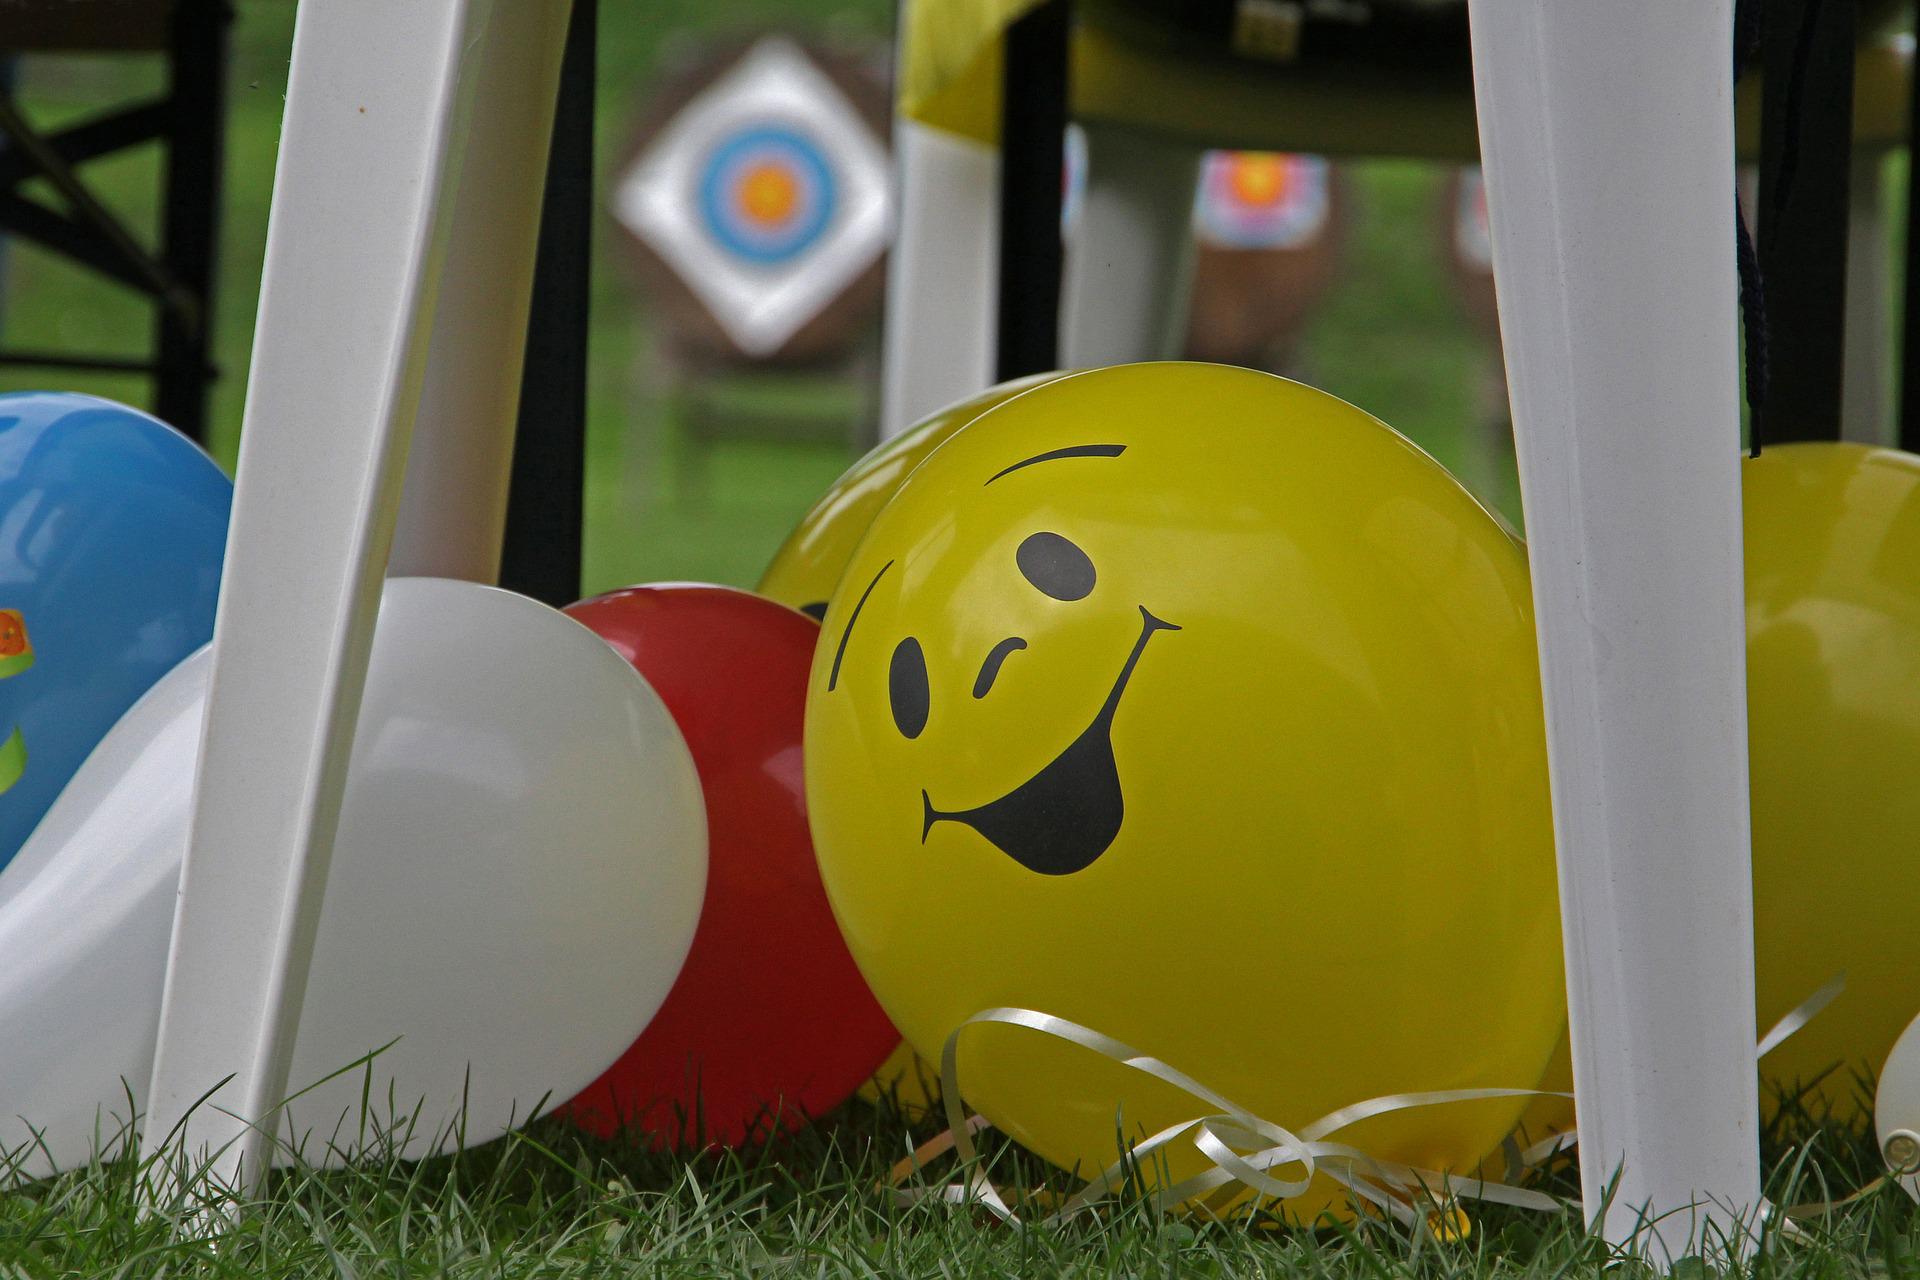 Aprenda a decorar eventos de Dia das Crianças com balões personalizados